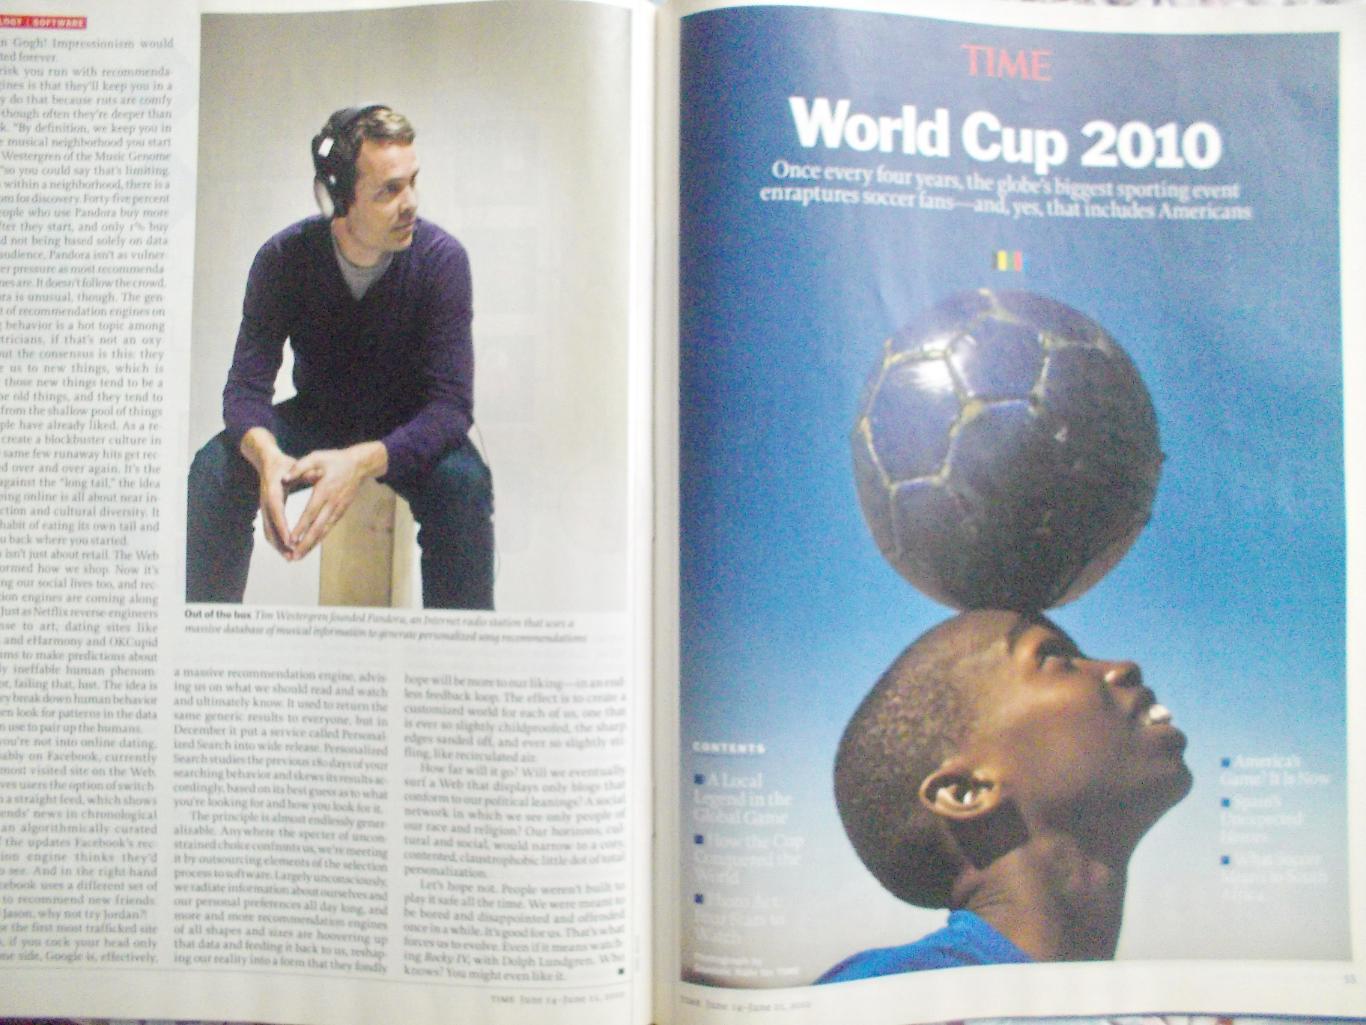 Журнал TIME. О ЧМ-2010 по футболу в Южной Африке. Июнь 2010 год. 1